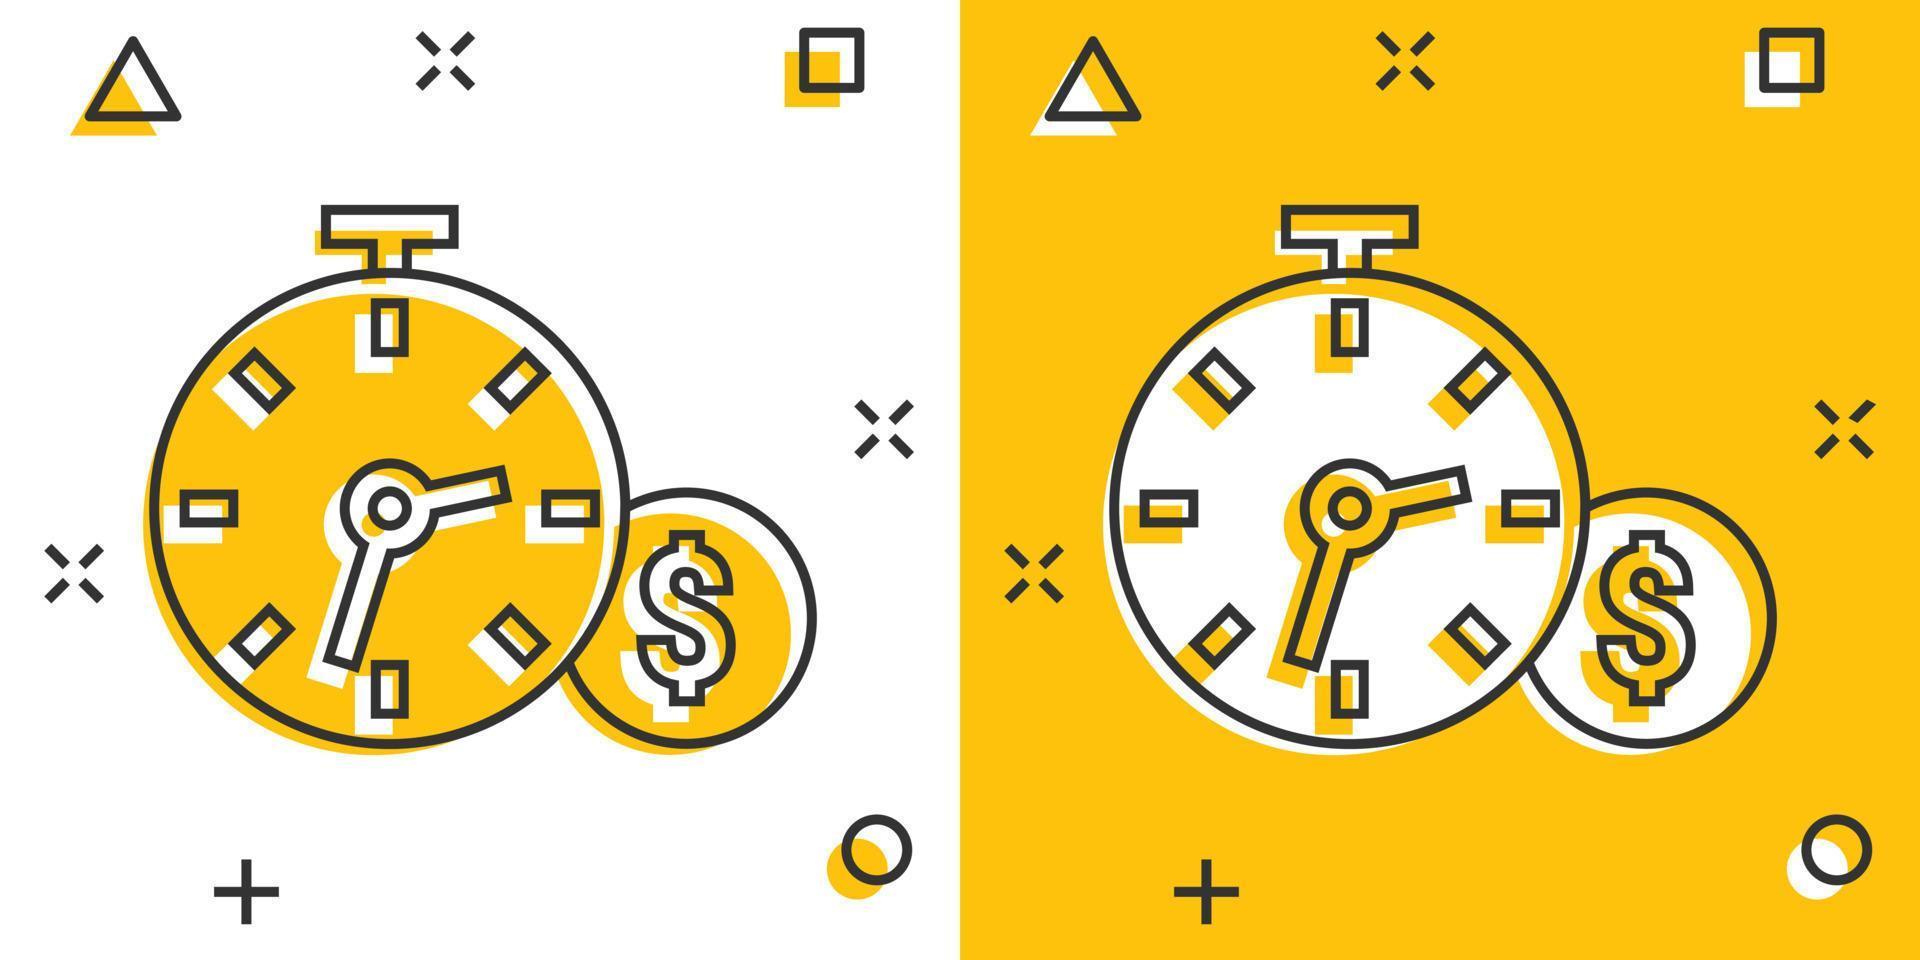 le temps est l'icône de l'argent dans le style comique. horloge avec illustration de vecteur de dessin animé dollar sur fond blanc isolé. concept d'entreprise d'effet d'éclaboussure de monnaie.